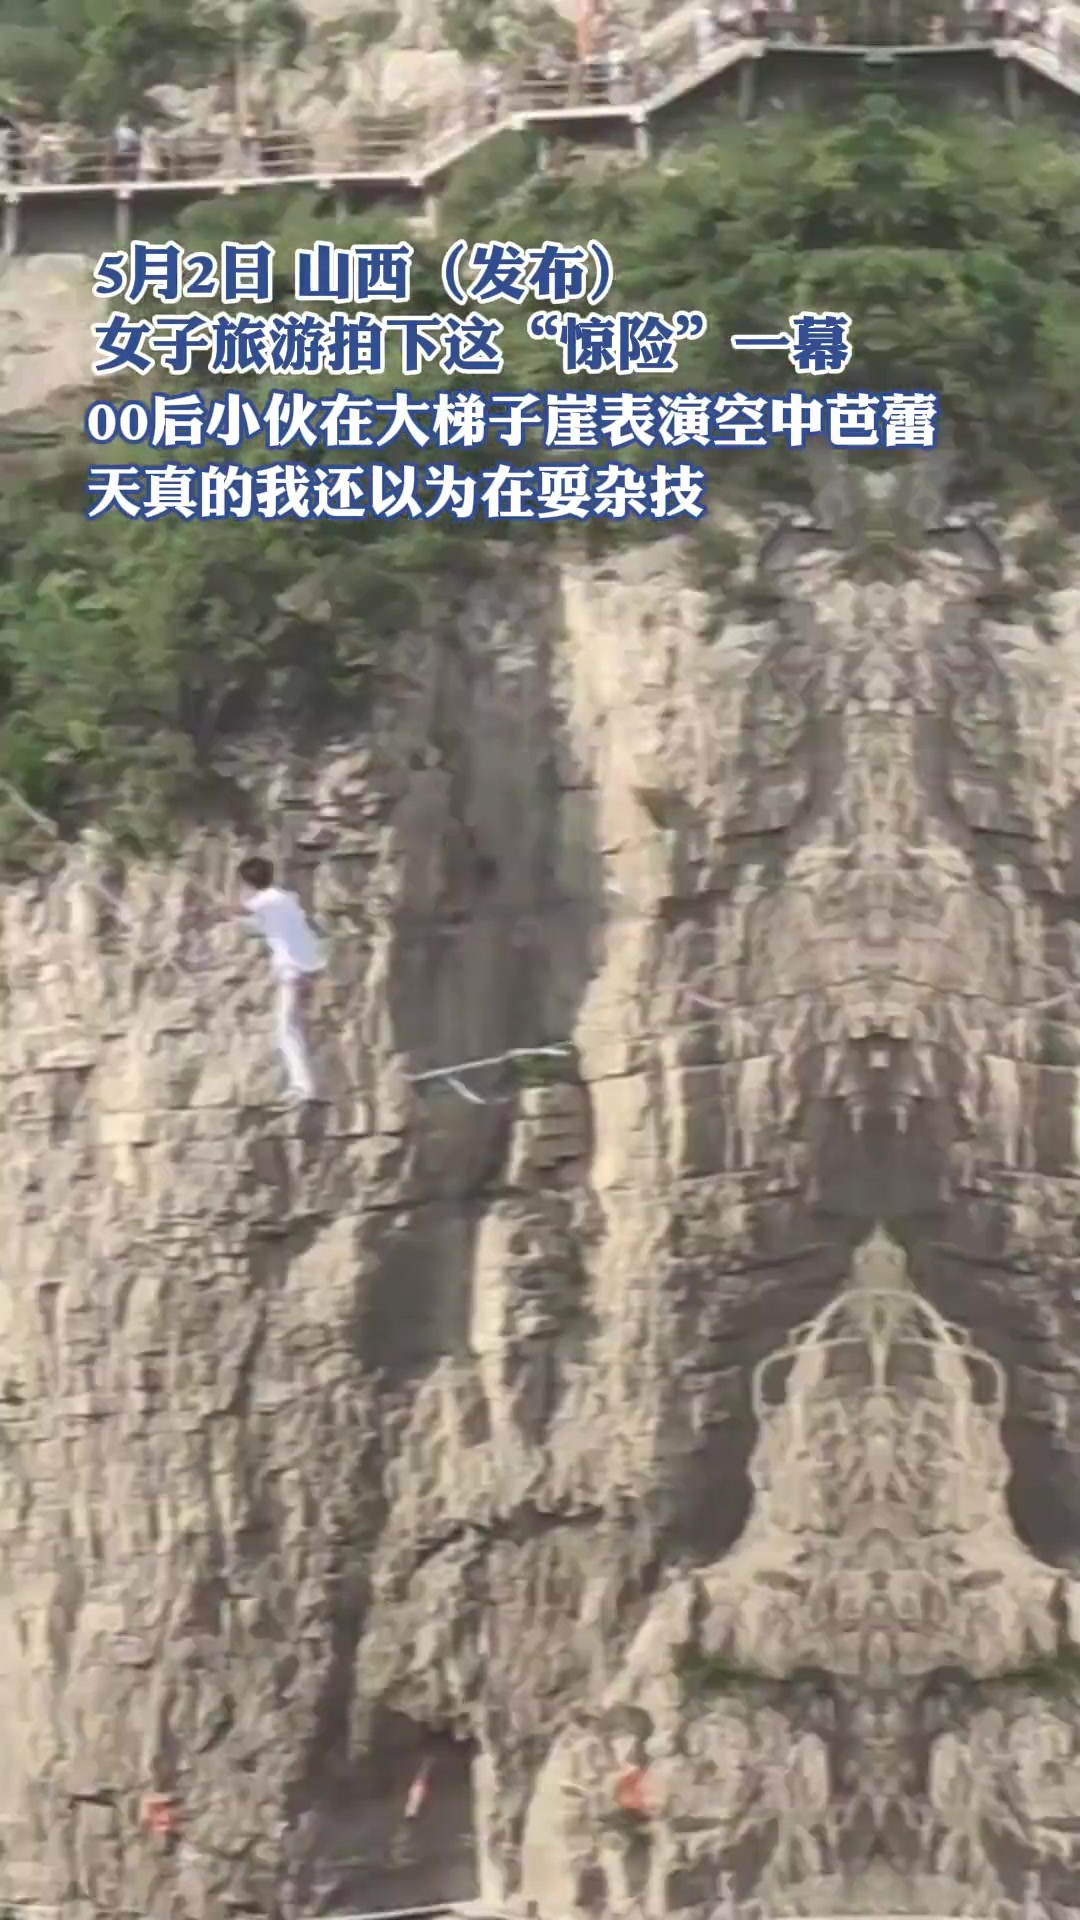 女子旅游拍下这“惊险”一幕00后小伙在大梯子崖表演空中芭蕾